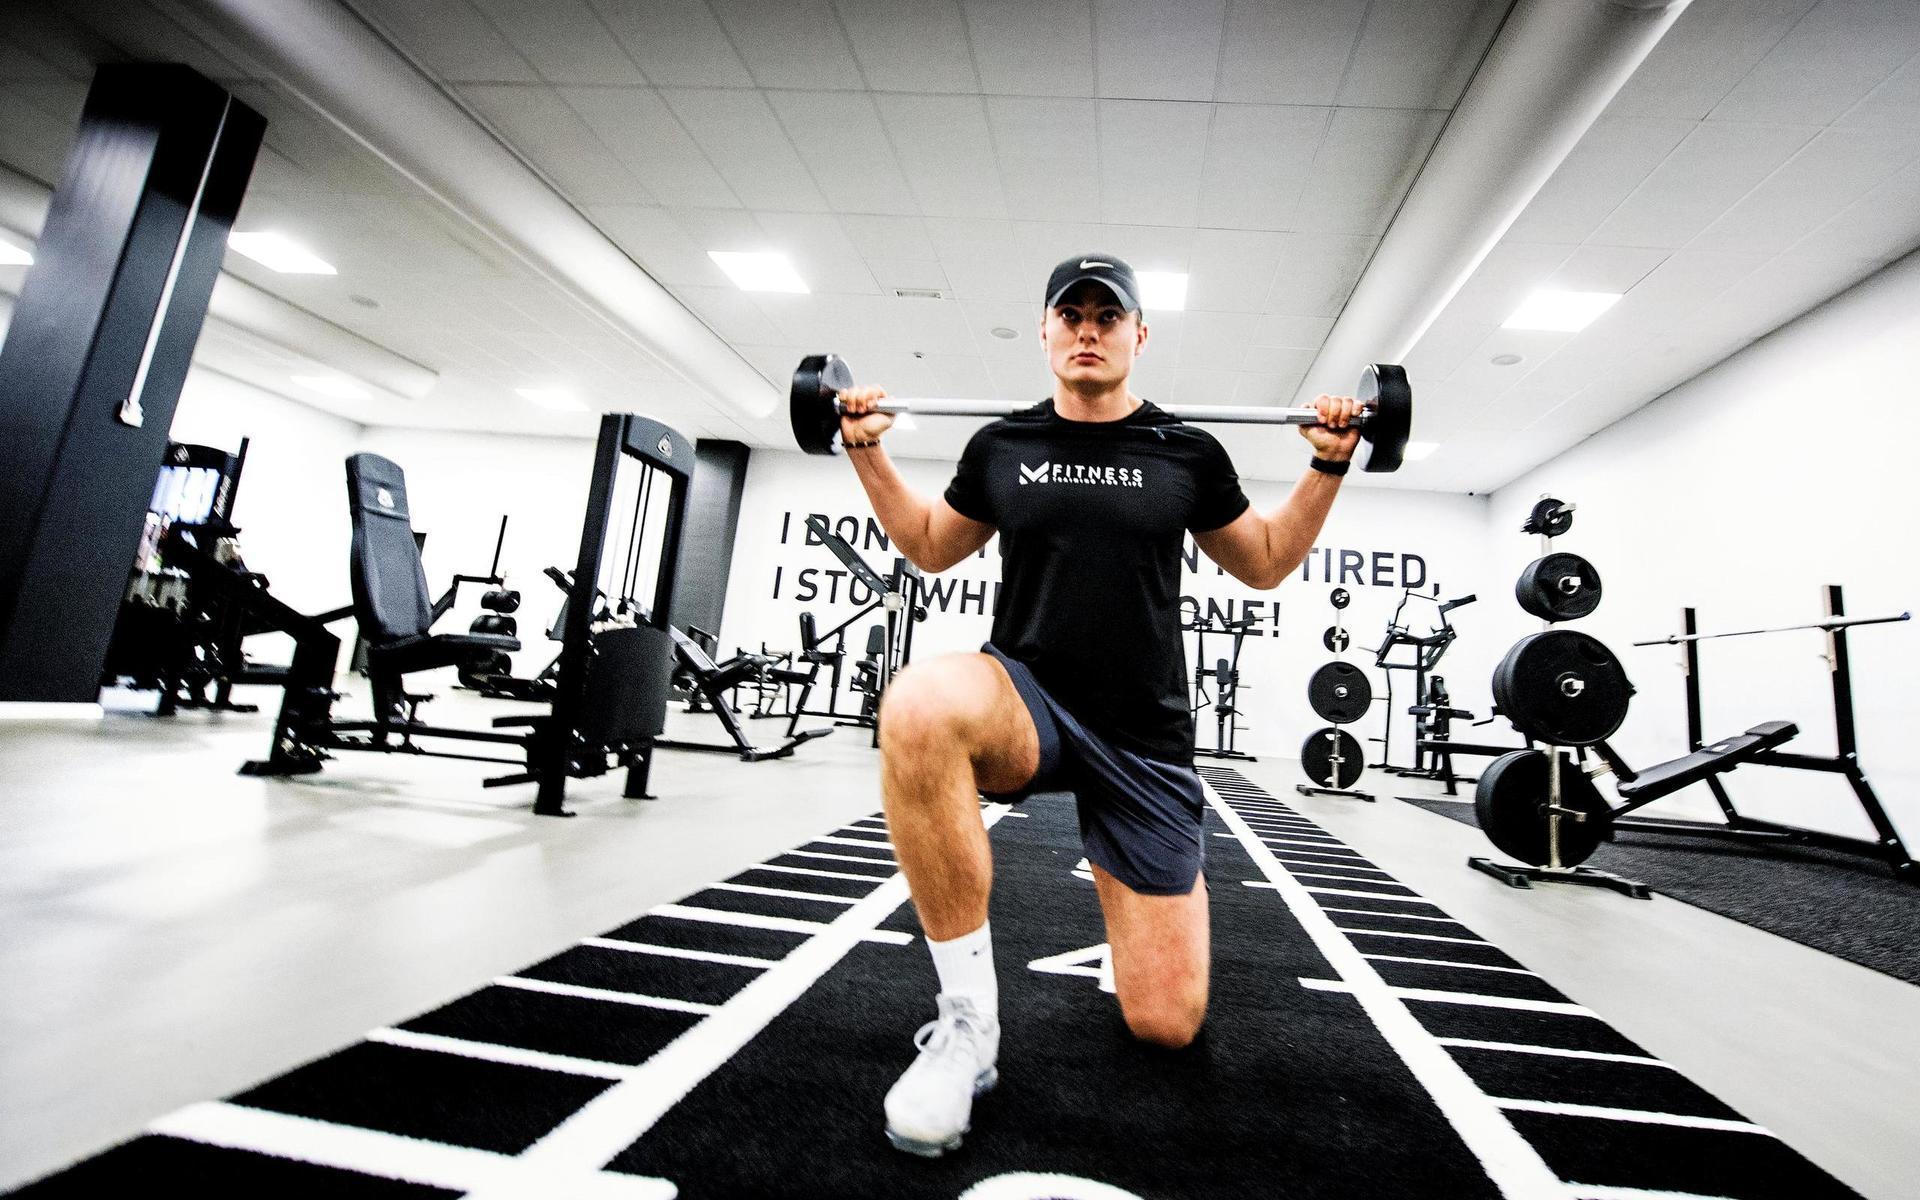 Att starta och driva eget gym har länge varit en dröm för Marcus Sandberg.